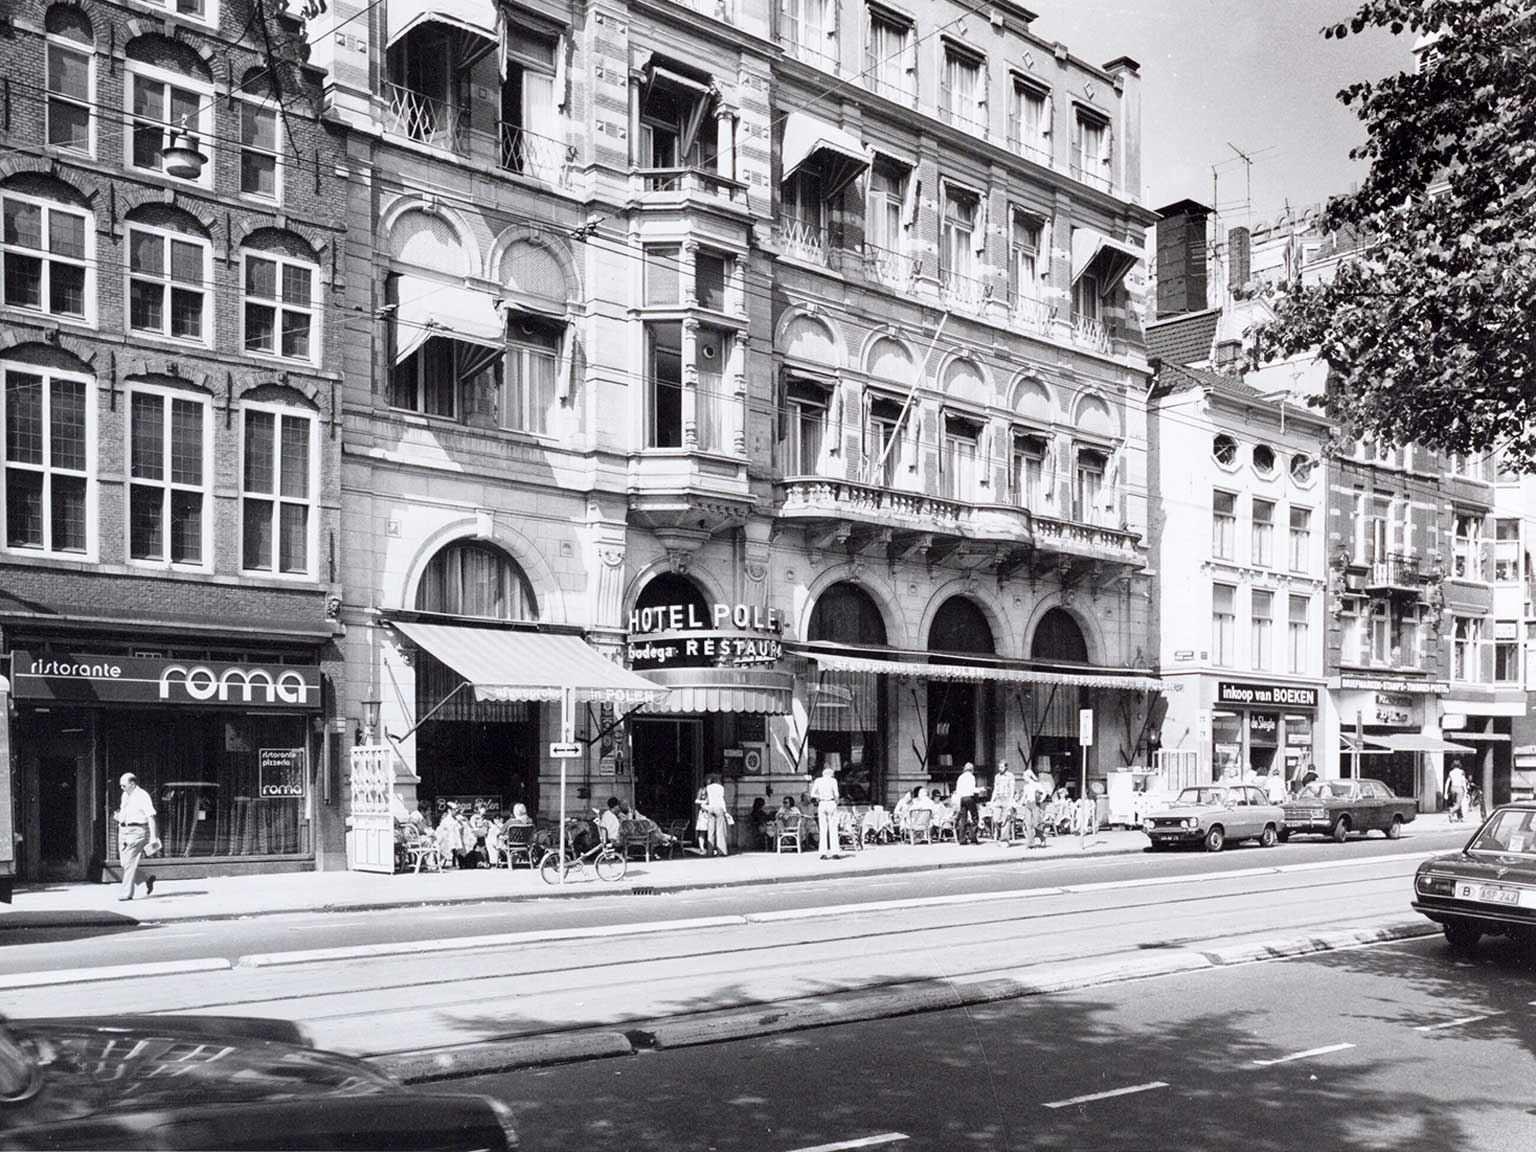 Hotel Polen at Rokin 14, Amsterdam, in August 1974